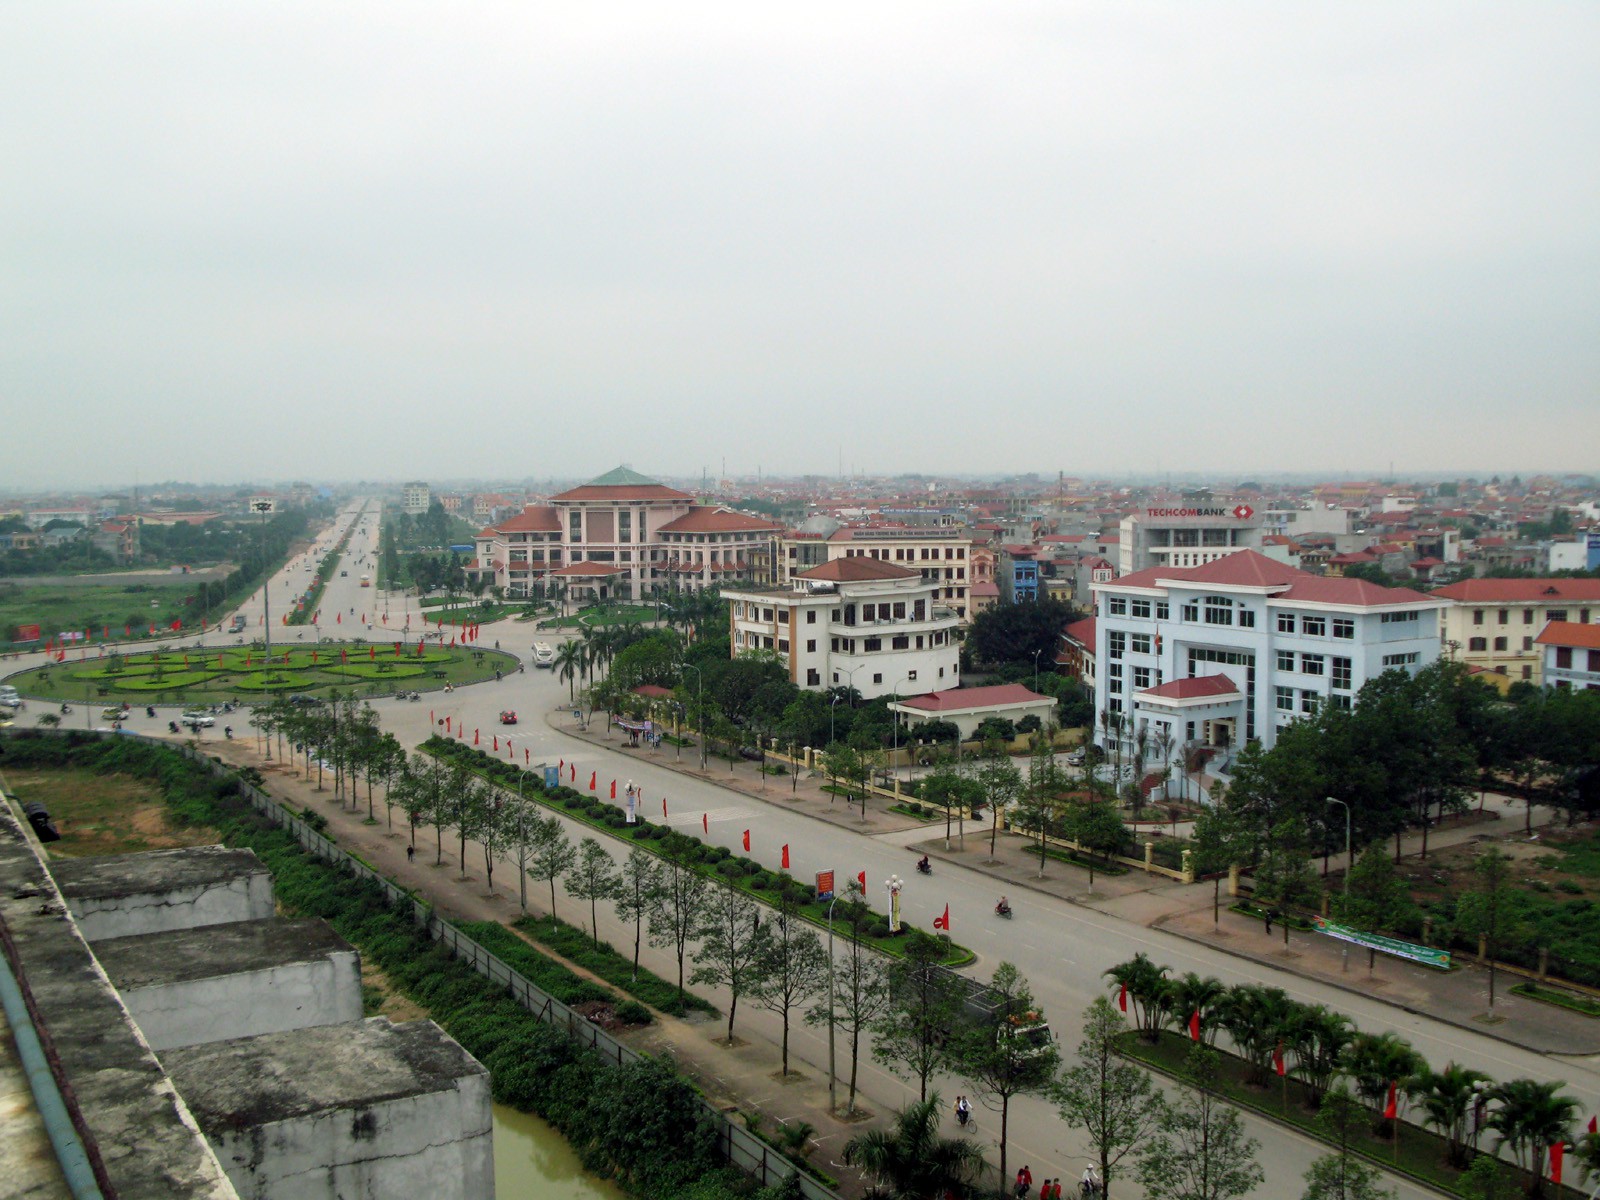 Hinfha rnh một góc TP. Bắc Ninh nhìn từ trên cao với những tòa nhà thấp tầng xen kẽ cây xanh, đường sá